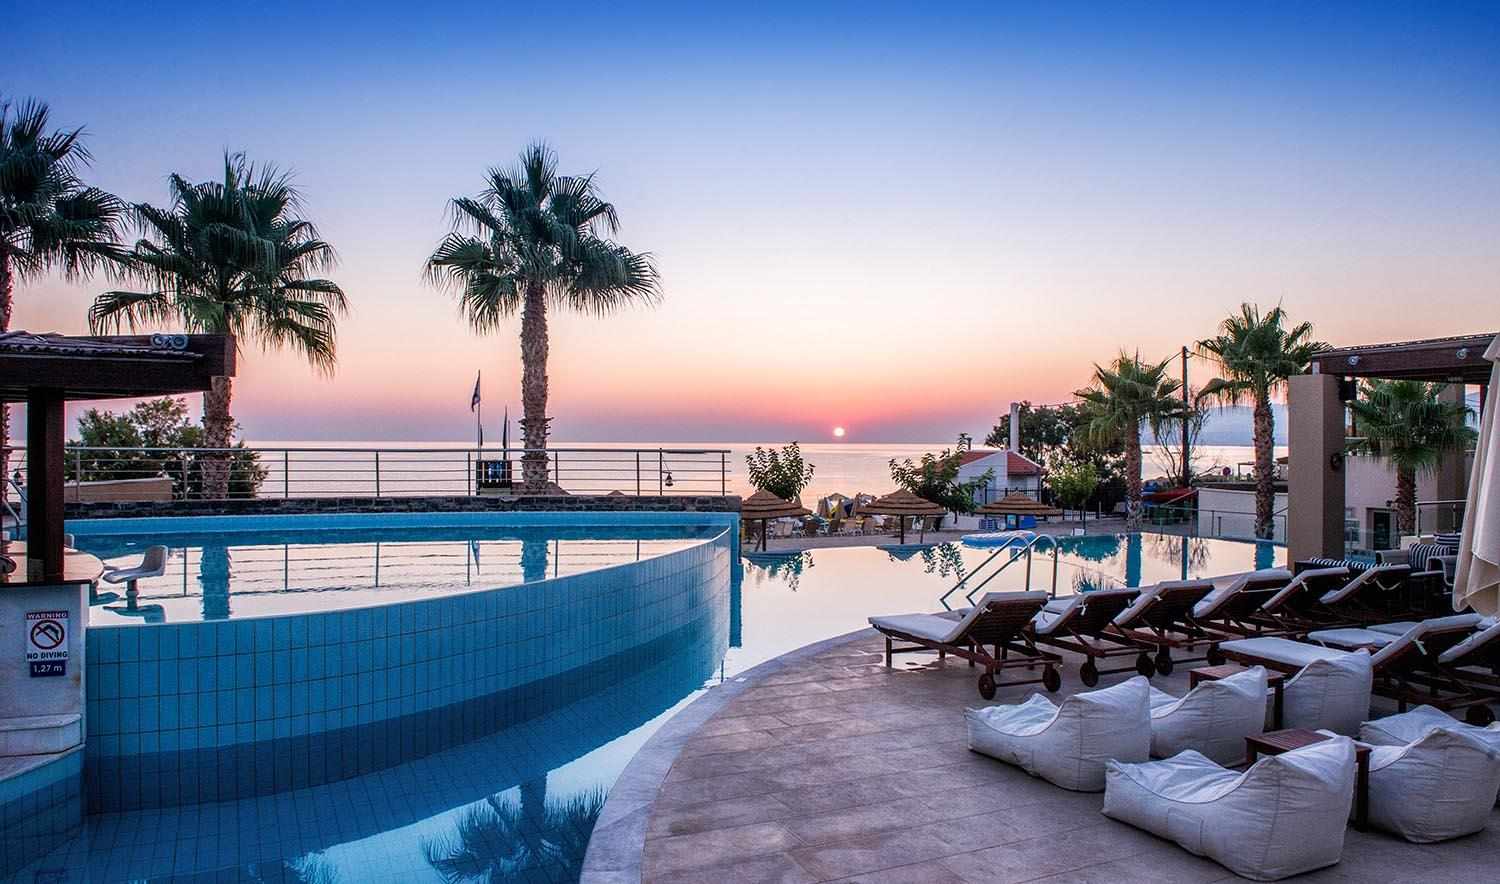 Hotel Blue Sea Beach, Stalís (Stalída), Kreta, Griekenland